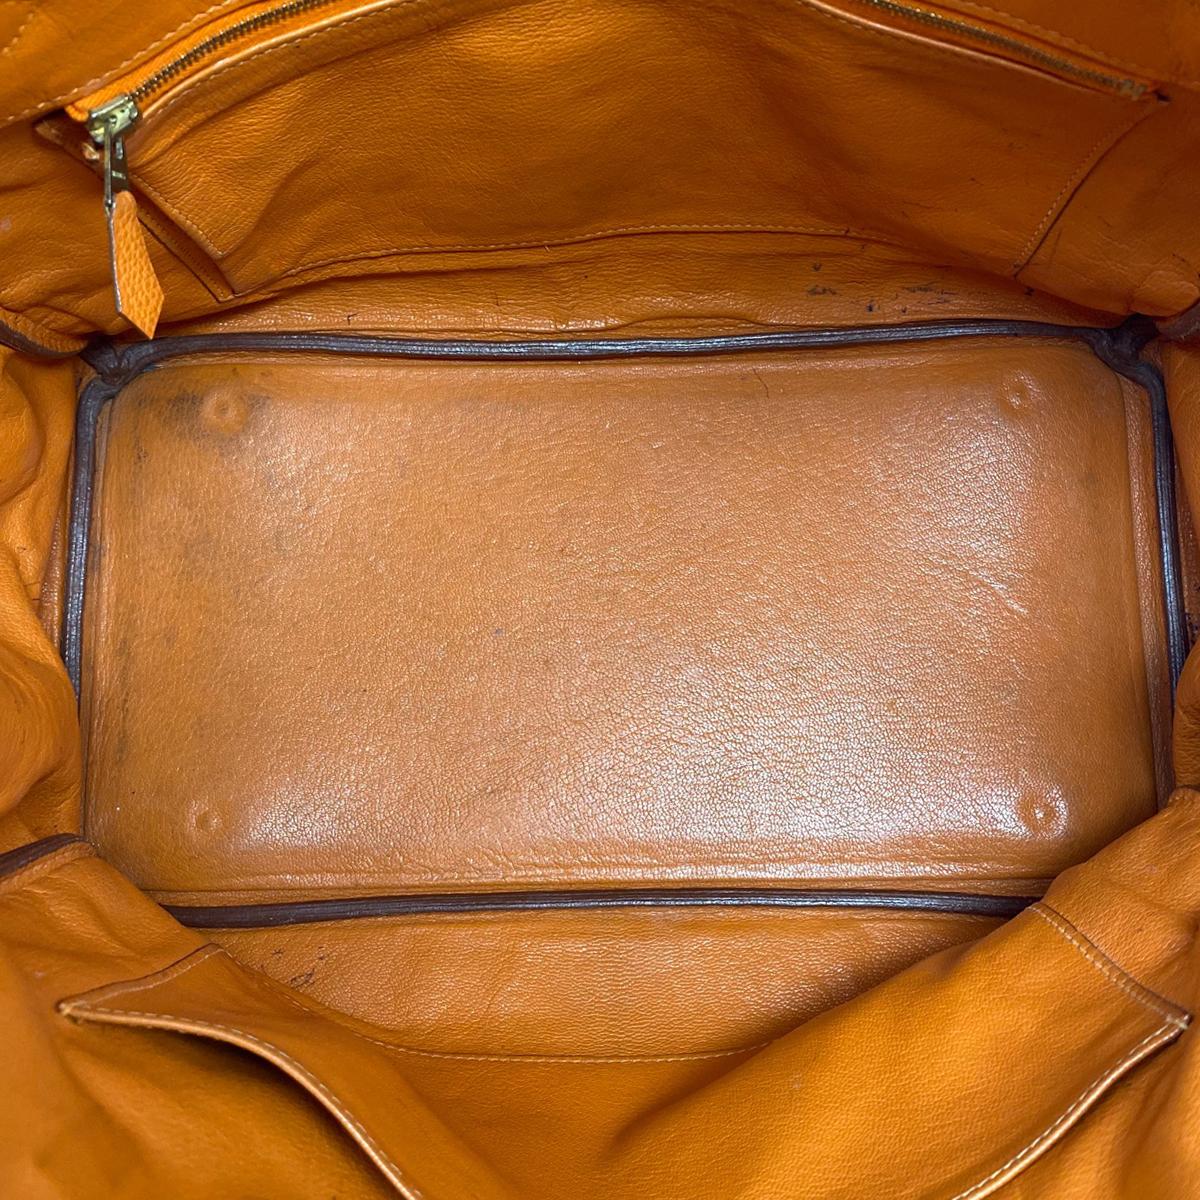 Hermes Birkin 35 Bag Togo Orange Leather GHW Top Handle Handbag For Sale 2